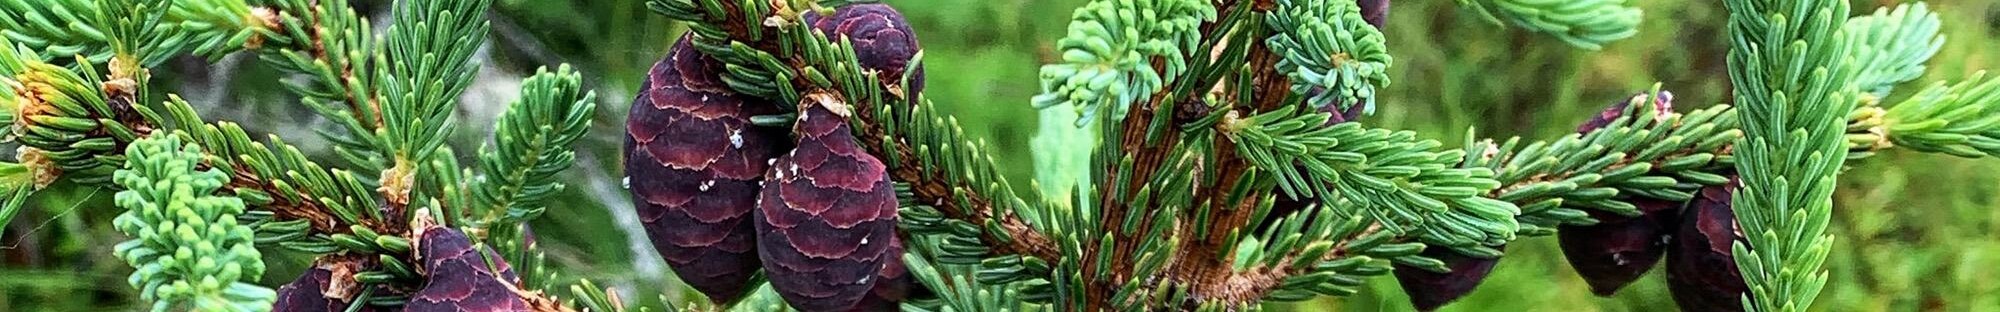 Close up shot of pine cones